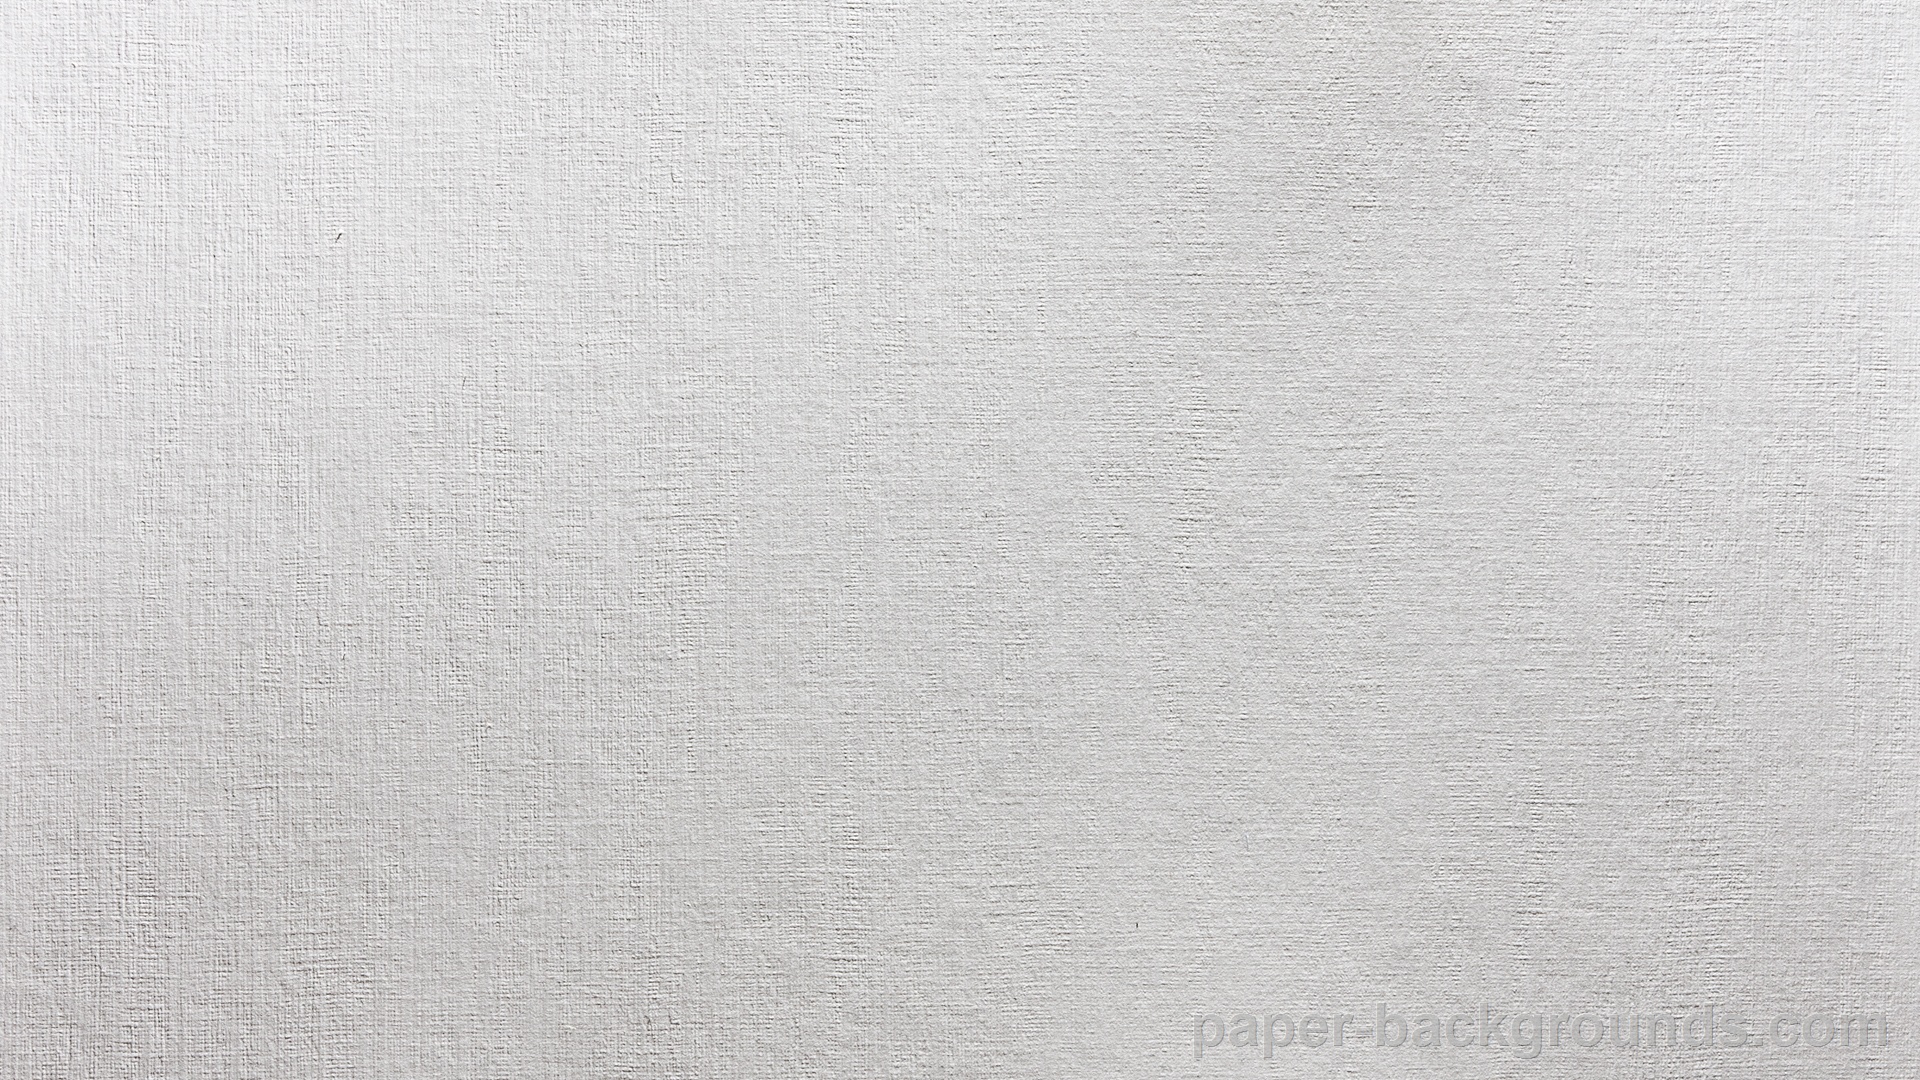 49 Paper Wallpaper Images On Wallpapersafari